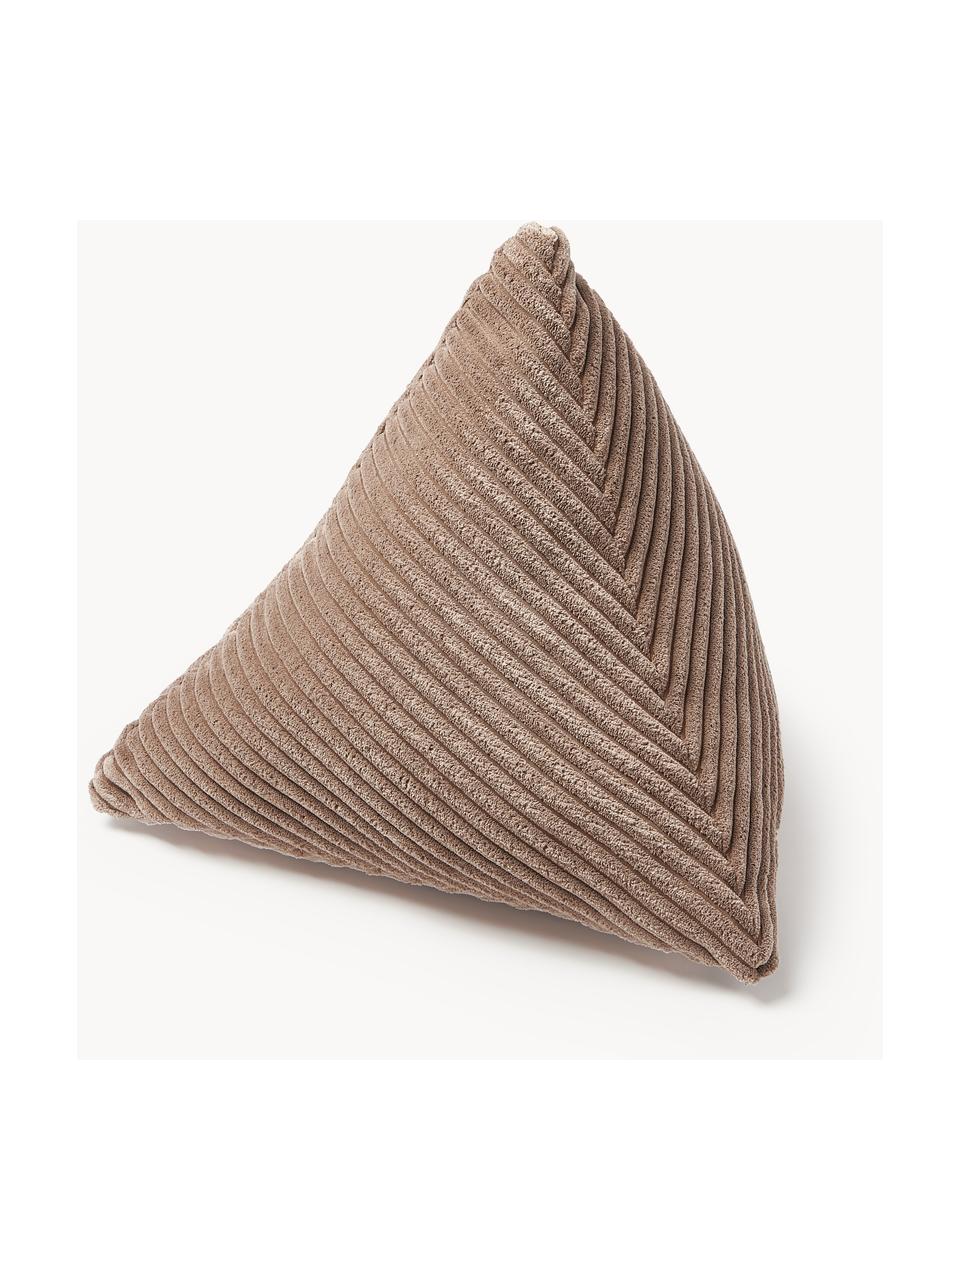 Coussin triangulaire en velours côtelé Kylen, Nougat, larg. 40 x long. 40 cm